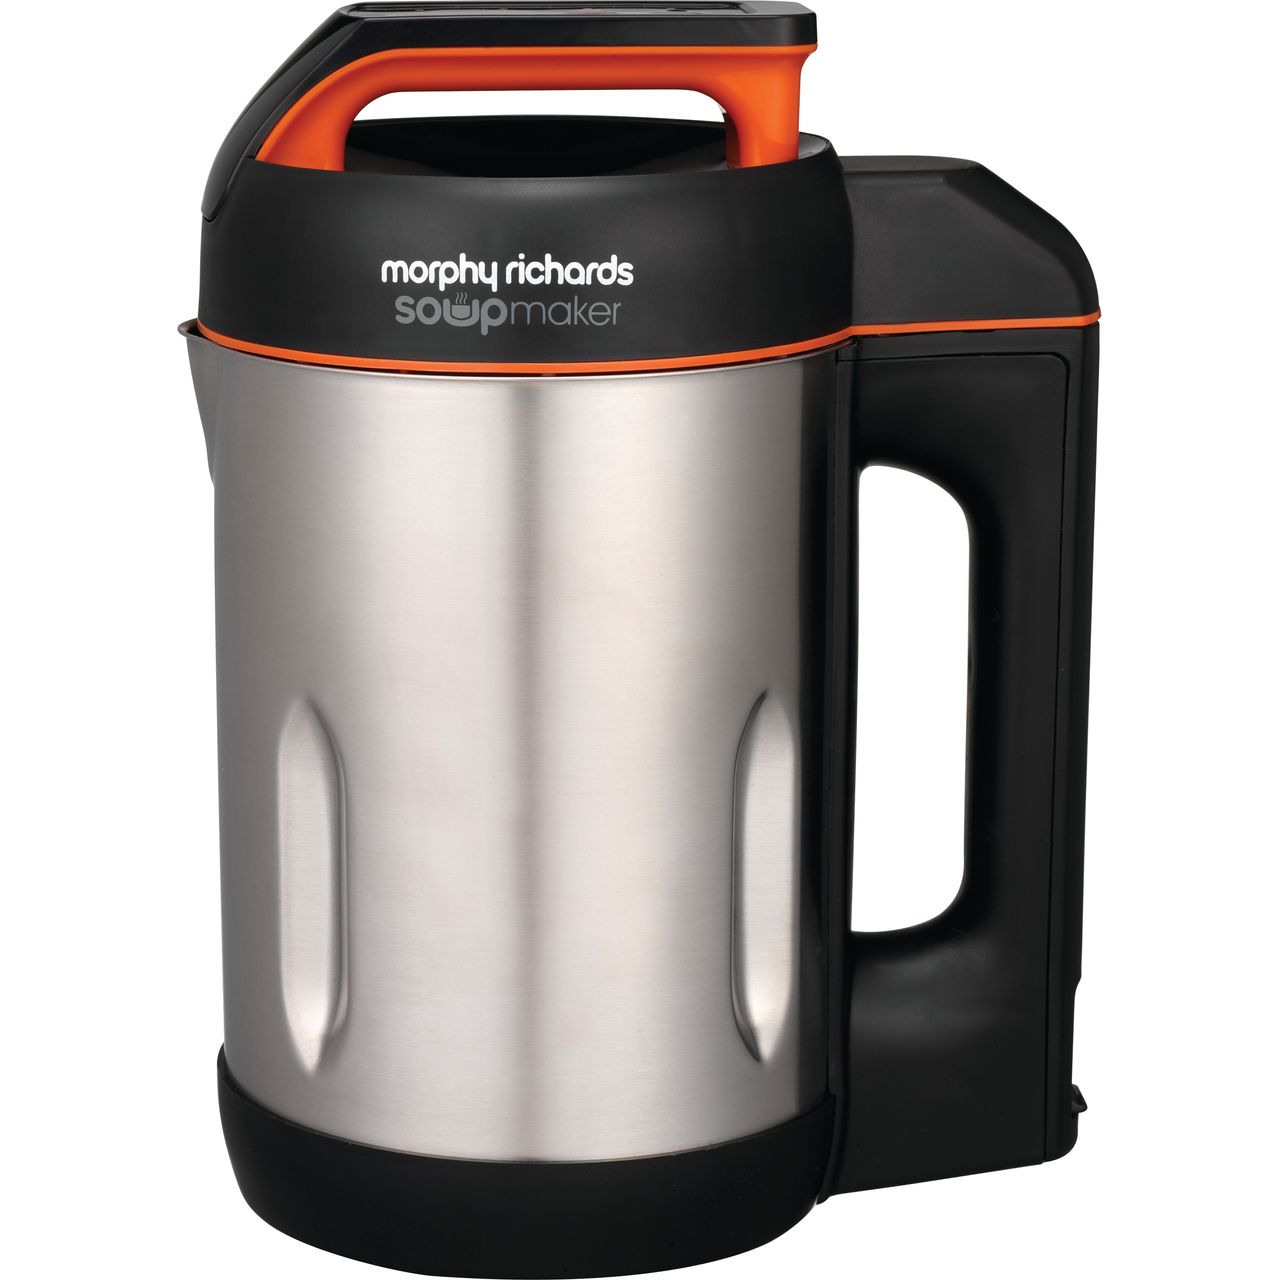 Morphy Richards 501022 1.6 Litre Soup Maker Review